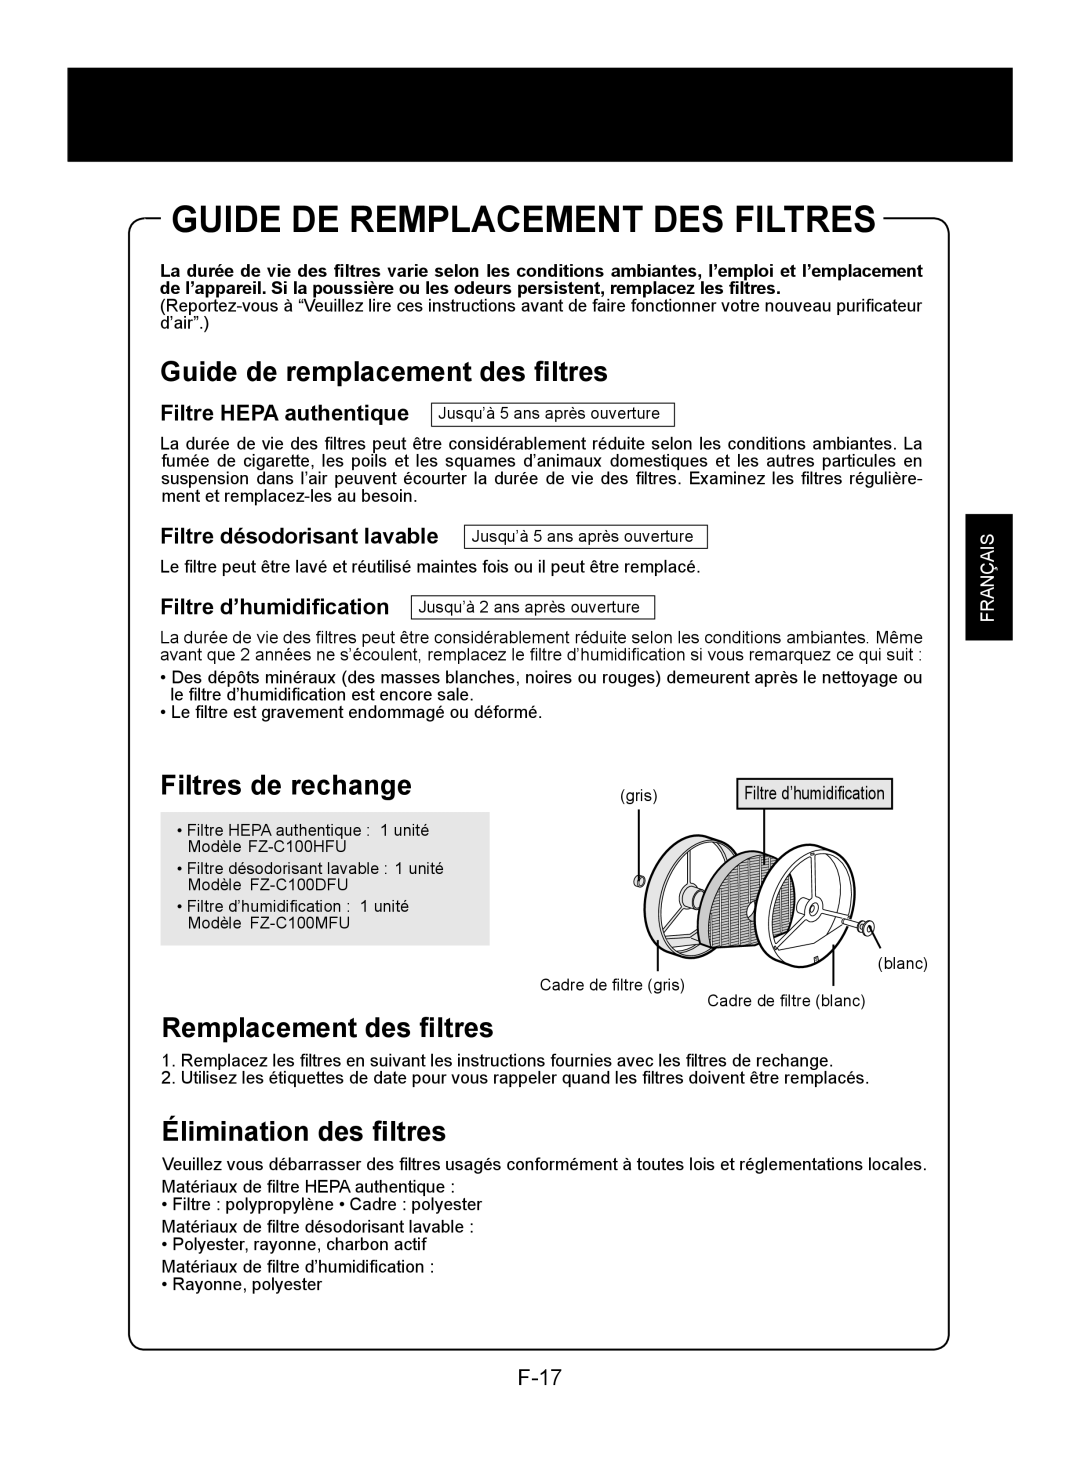 Sharp KC-850U Guide De Remplacement Des Filtres, Guide de remplacement des filtres, Filtres de rechange, F-7, Français 